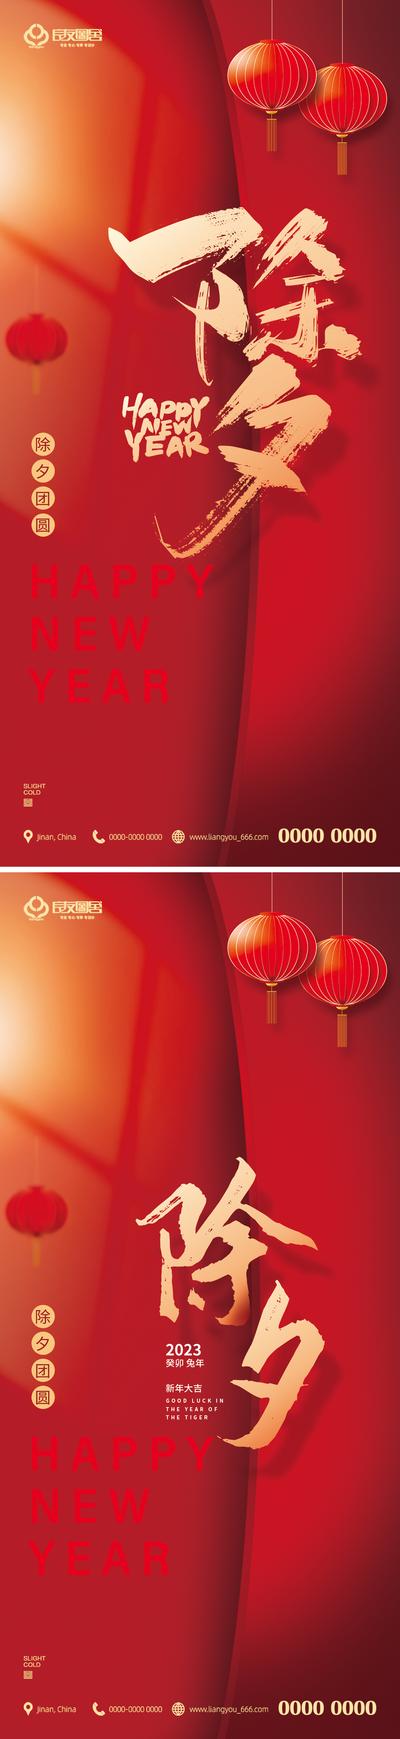 南门网 海报 房地产 除夕 新年 中国传统节日 春节 灯笼